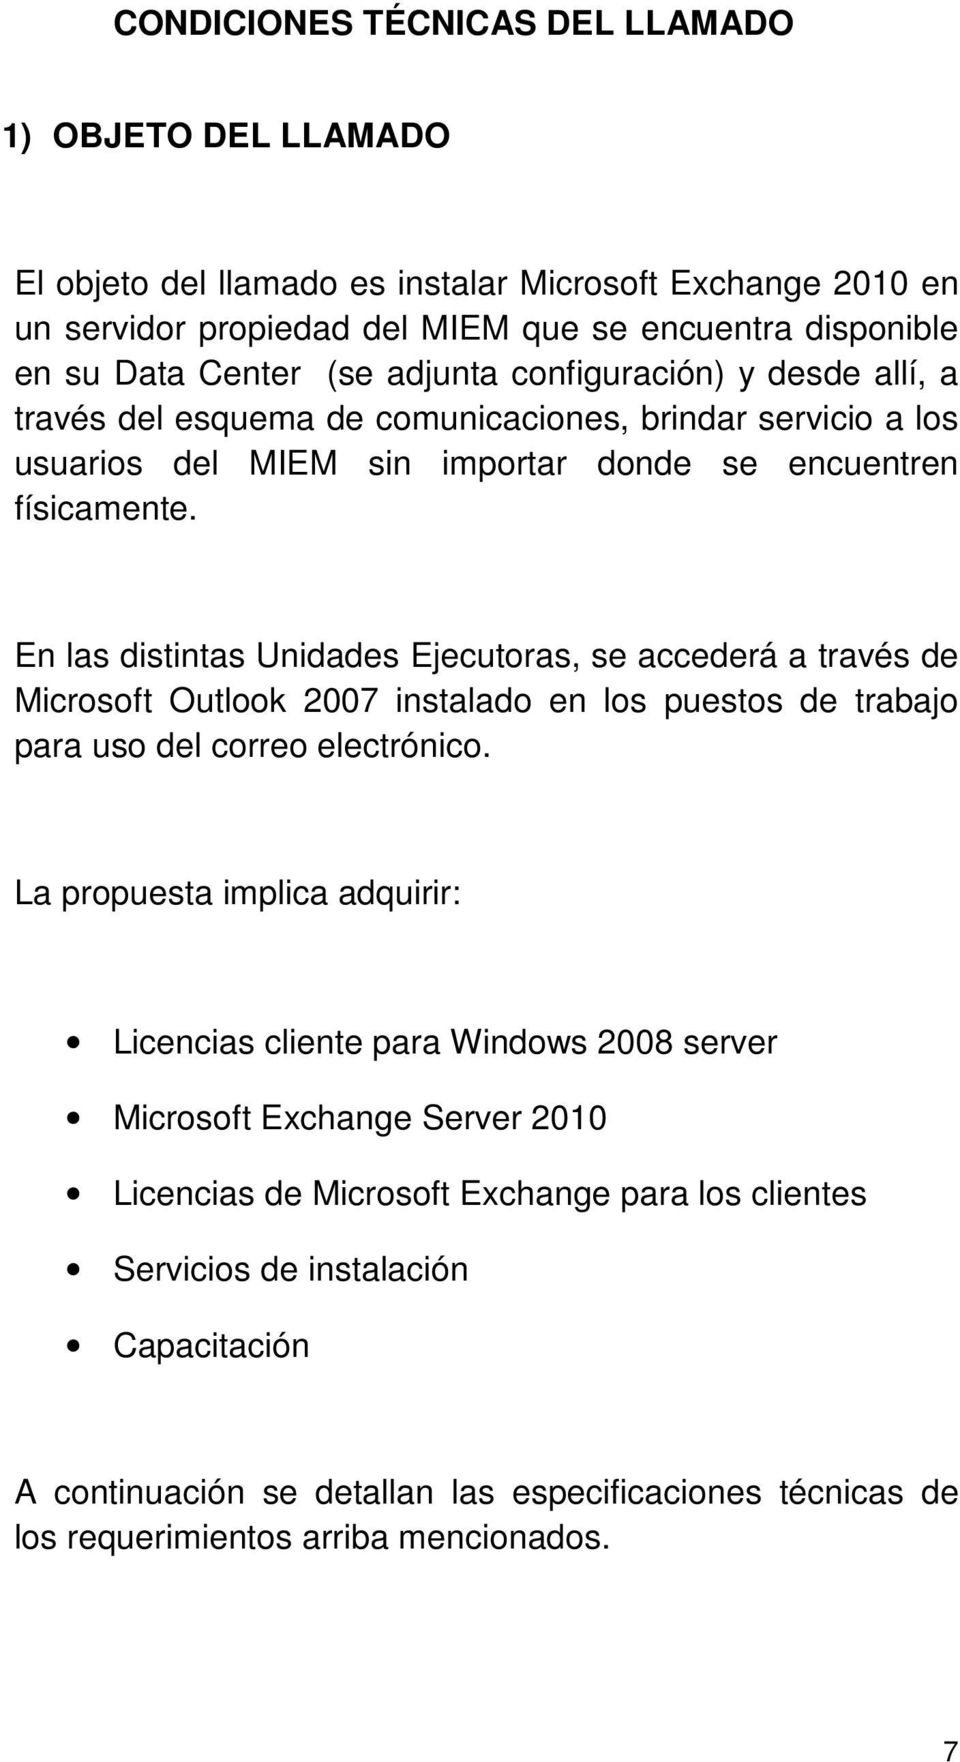 En las distintas Unidades Ejecutoras, se accederá a través de Microsoft Outlook 2007 instalado en los puestos de trabajo para uso del correo electrónico.